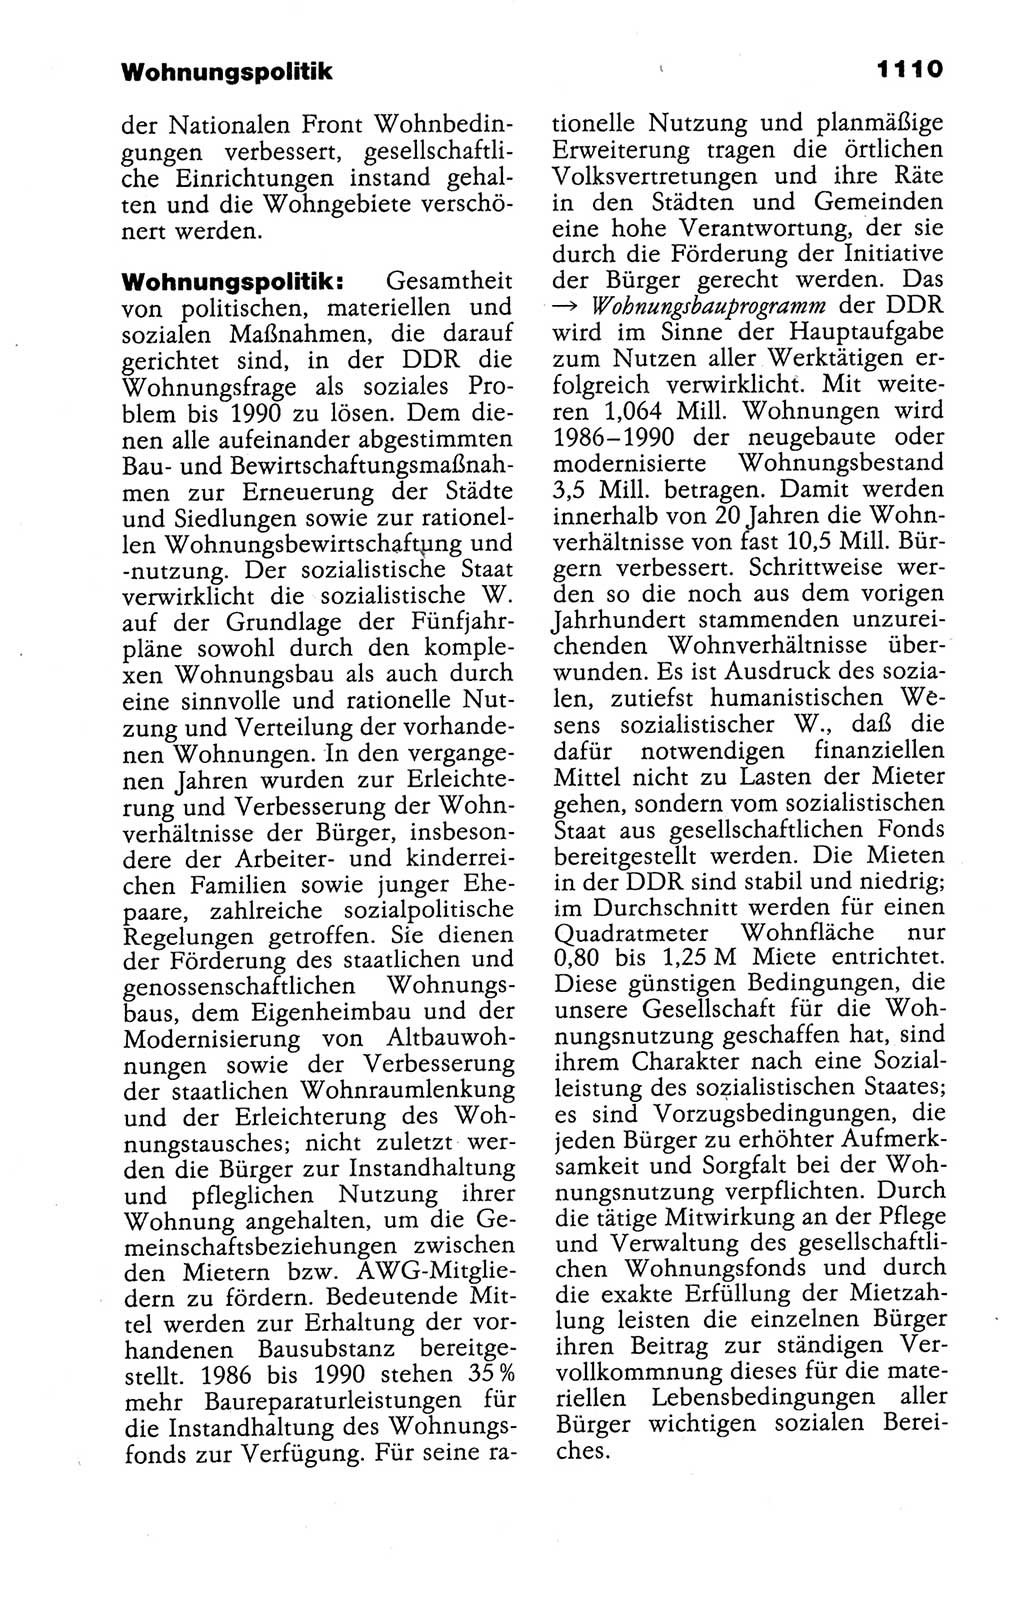 Kleines politisches Wörterbuch [Deutsche Demokratische Republik (DDR)] 1988, Seite 1110 (Kl. pol. Wb. DDR 1988, S. 1110)